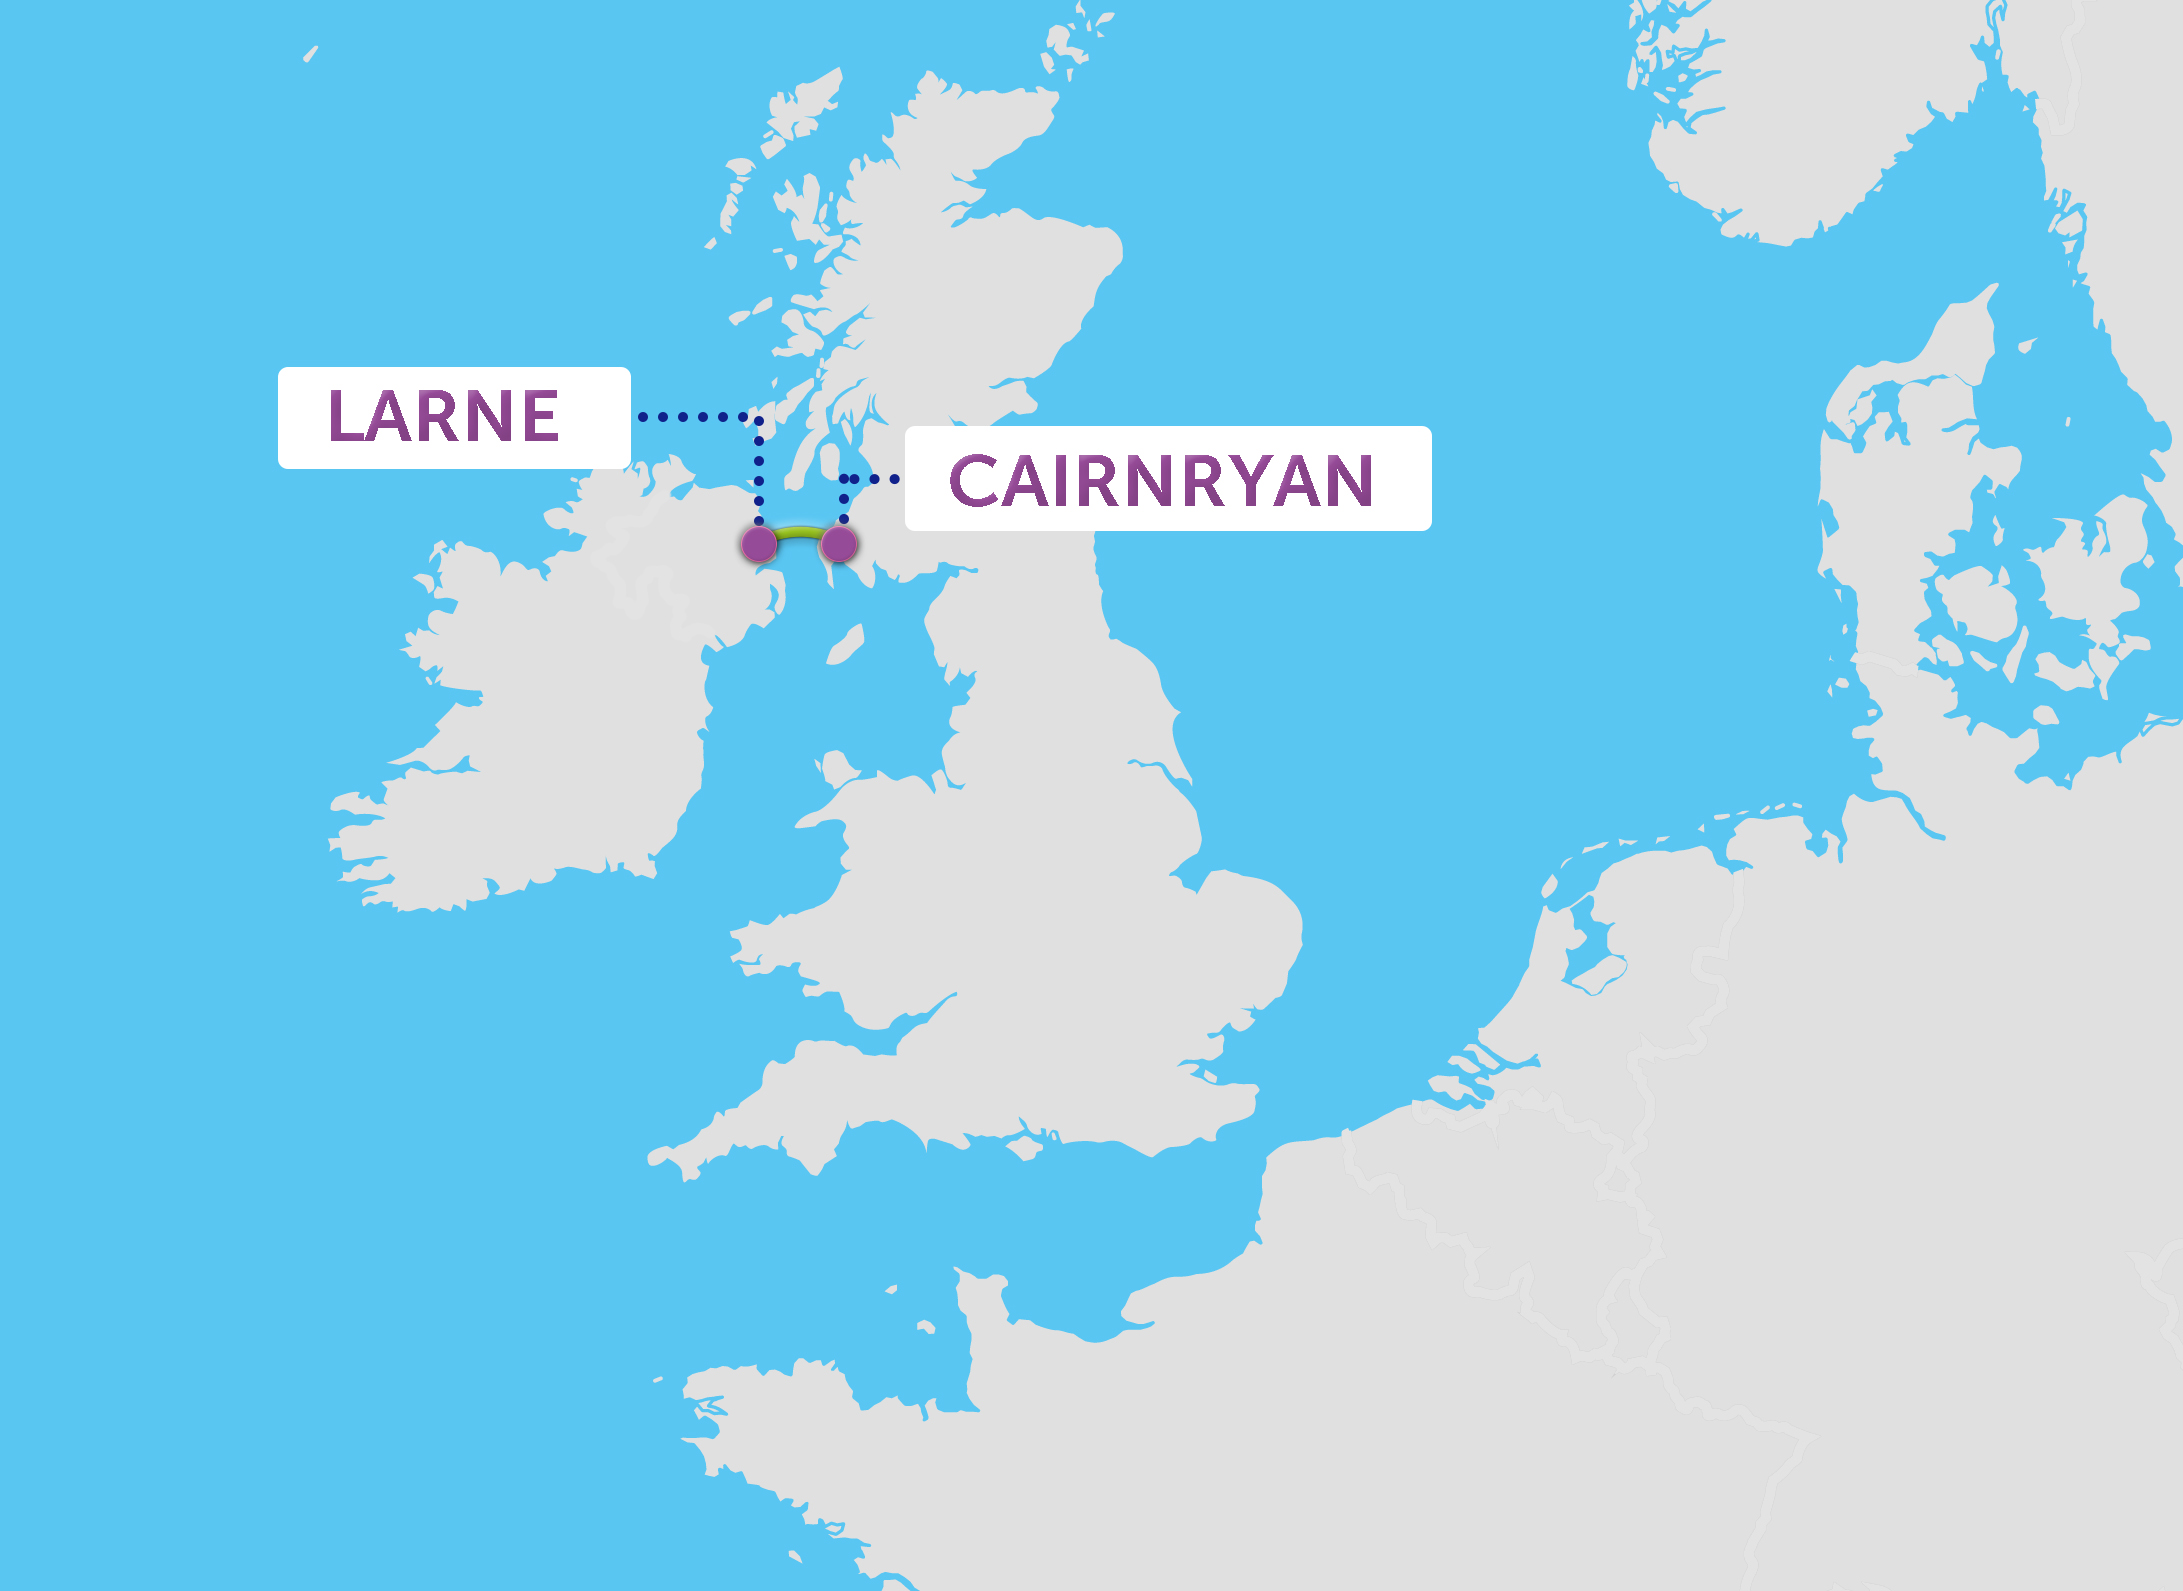 Karte der Fähre nach Schottland Strecke mit P&O Ferries Larne nach Cairnryan Strecke